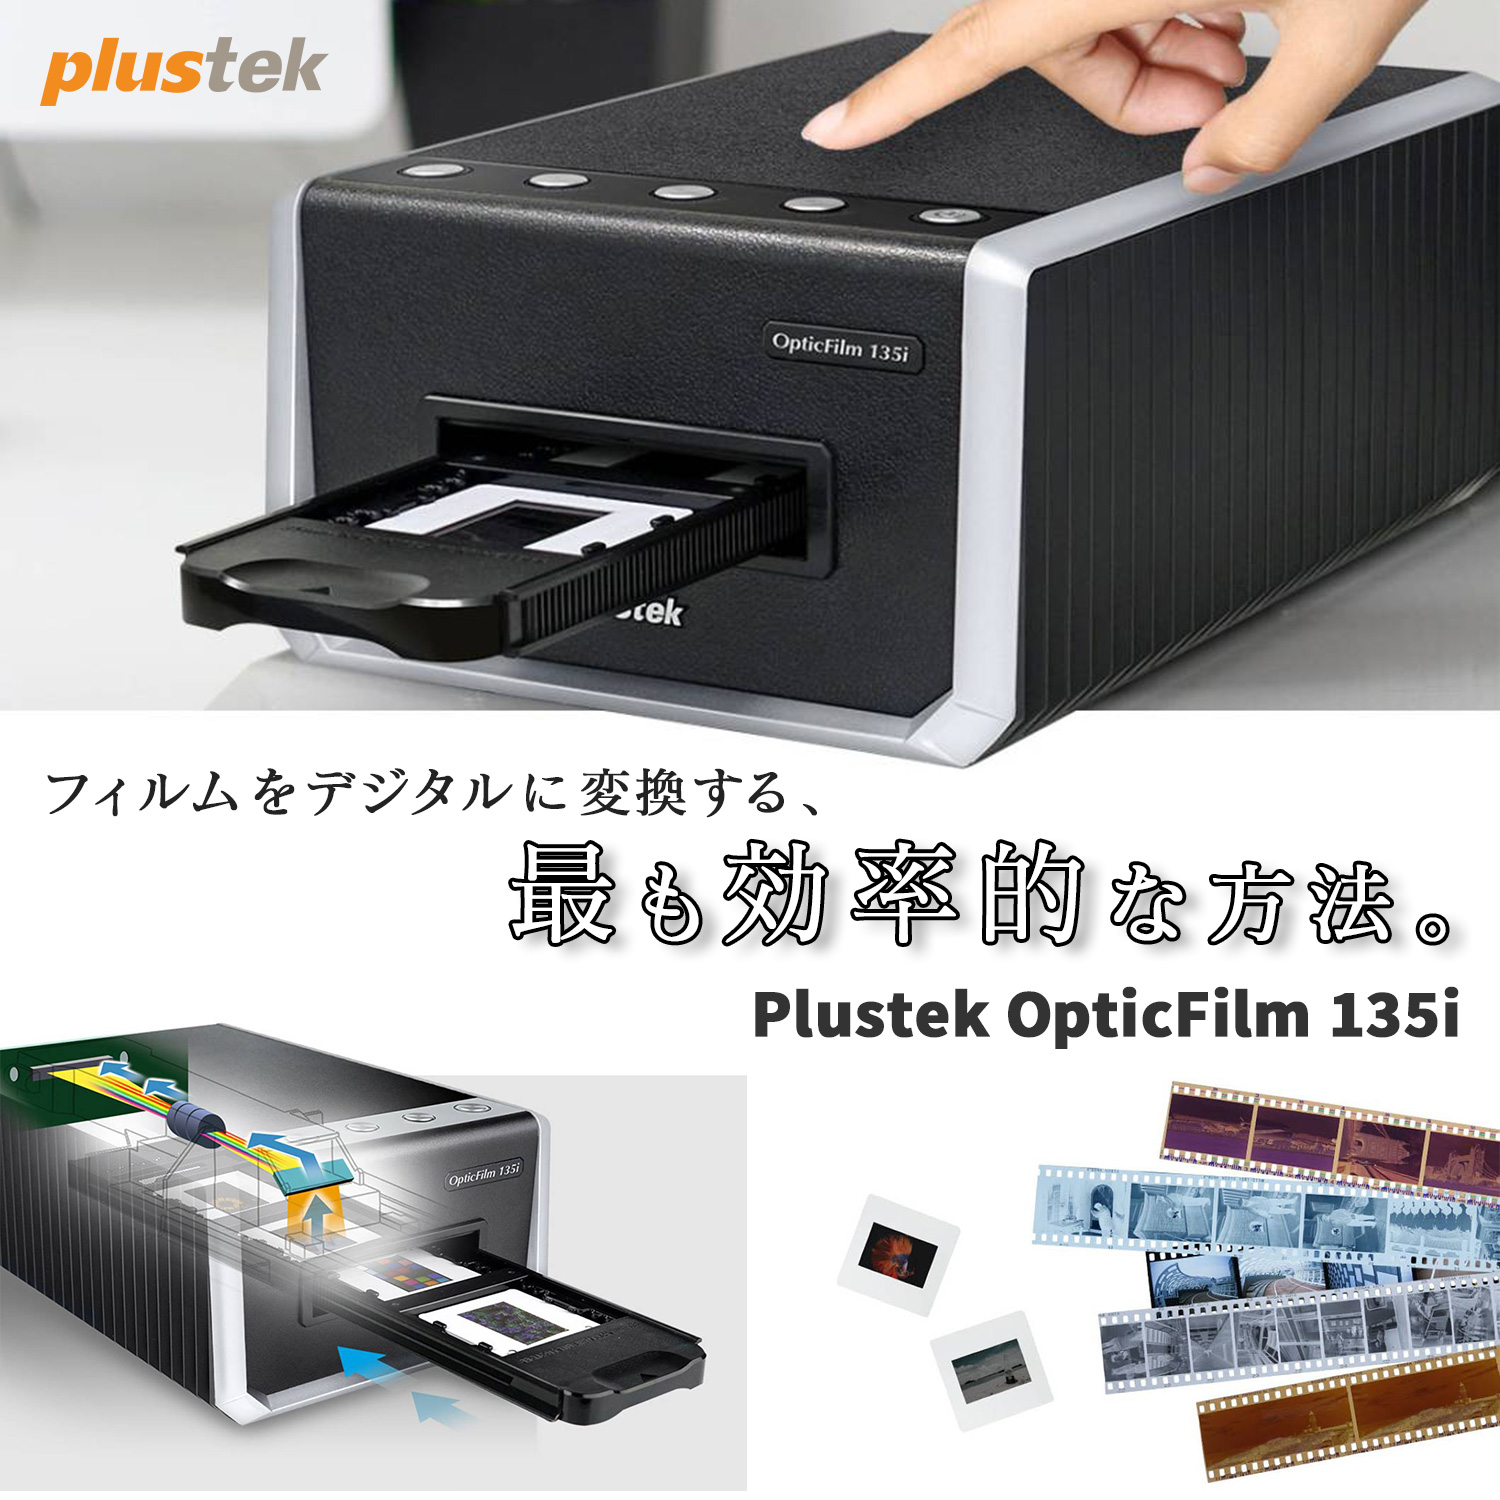 大人気☆ Plustek OpticFilm 135i 35mm専用フィルムスキャナー 自動コマ送り Windows10 macOS 対応 